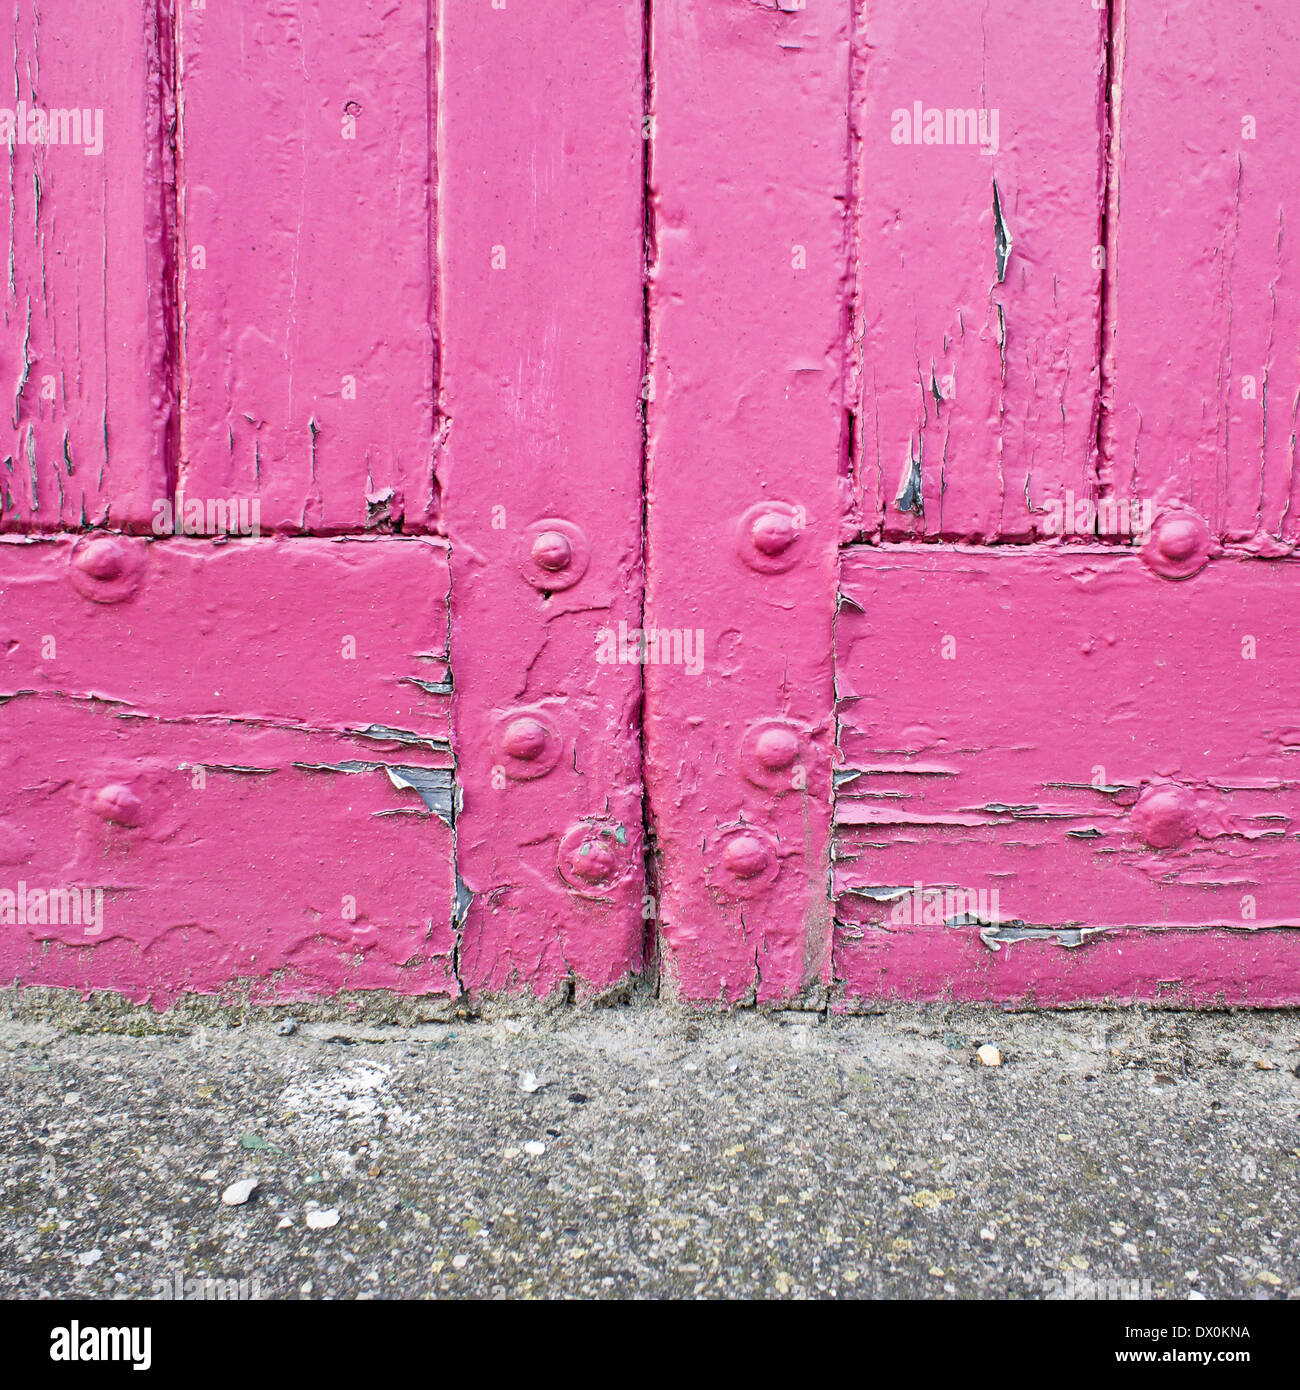 Près de la base d'une porte rose Photo Stock - Alamy